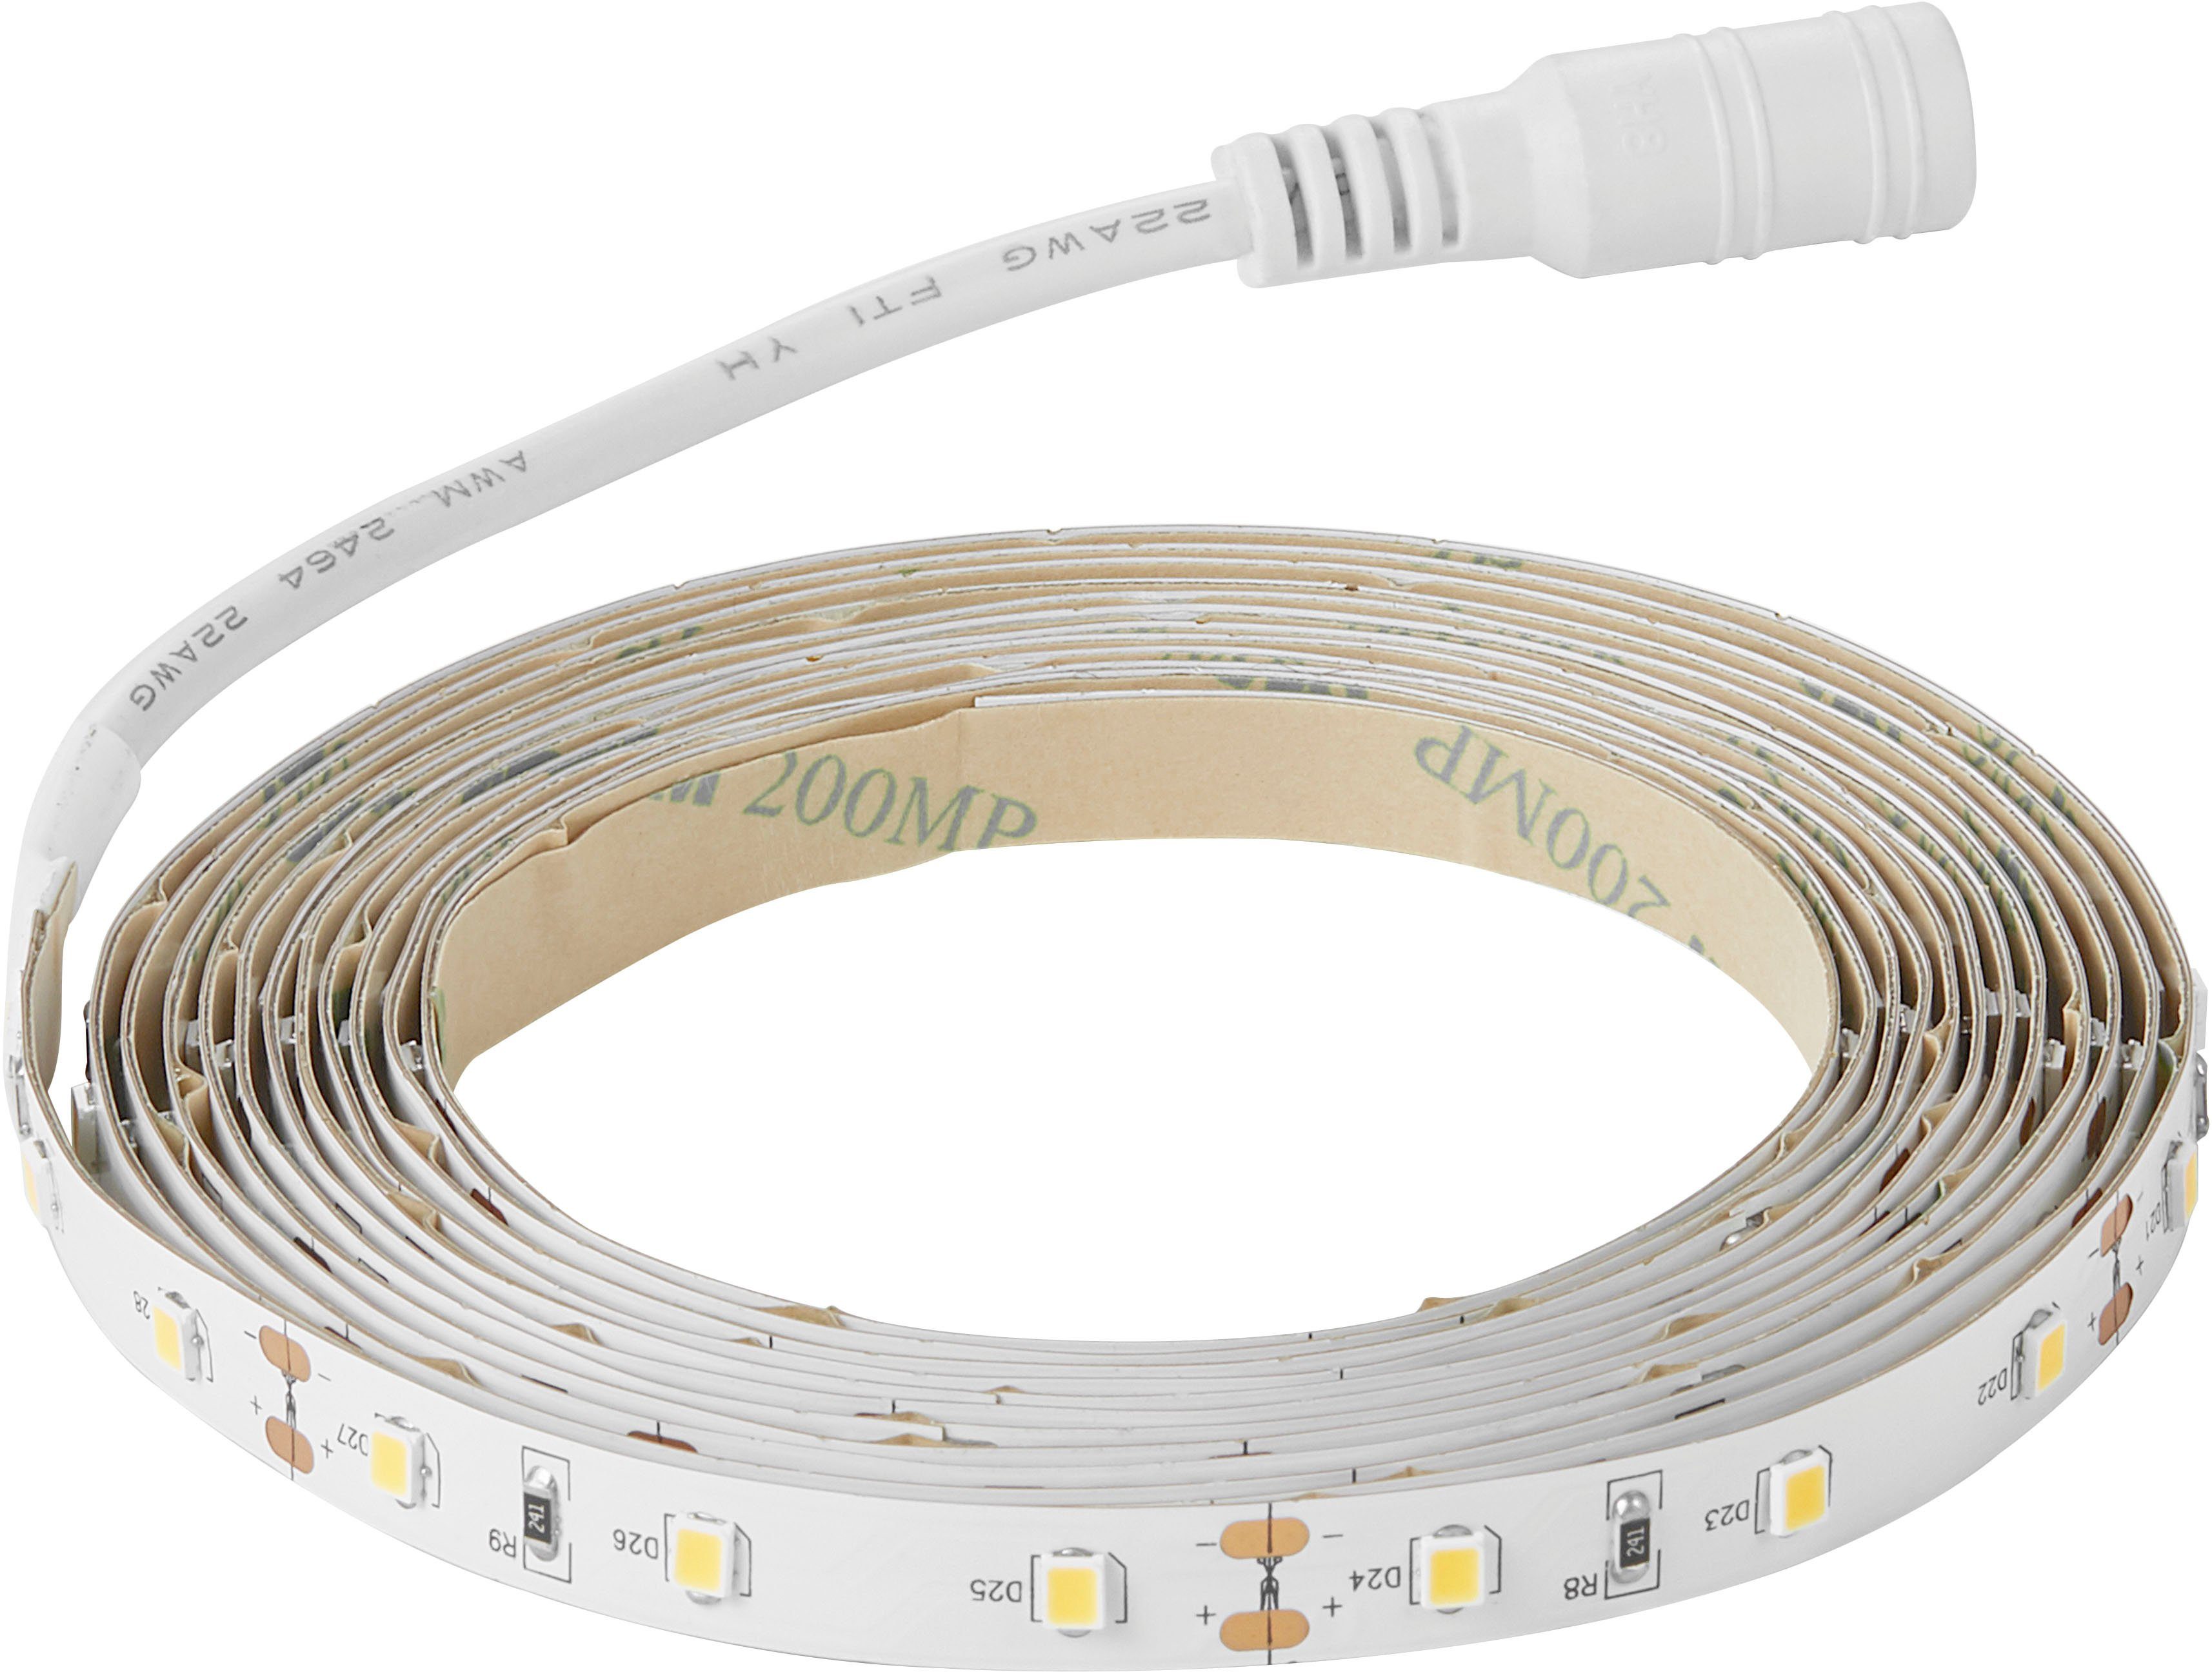 Ledstrip, Nordlux LED anzubringen Stripe Klebeband Einfach auf wiederverwendbar – Streifen,